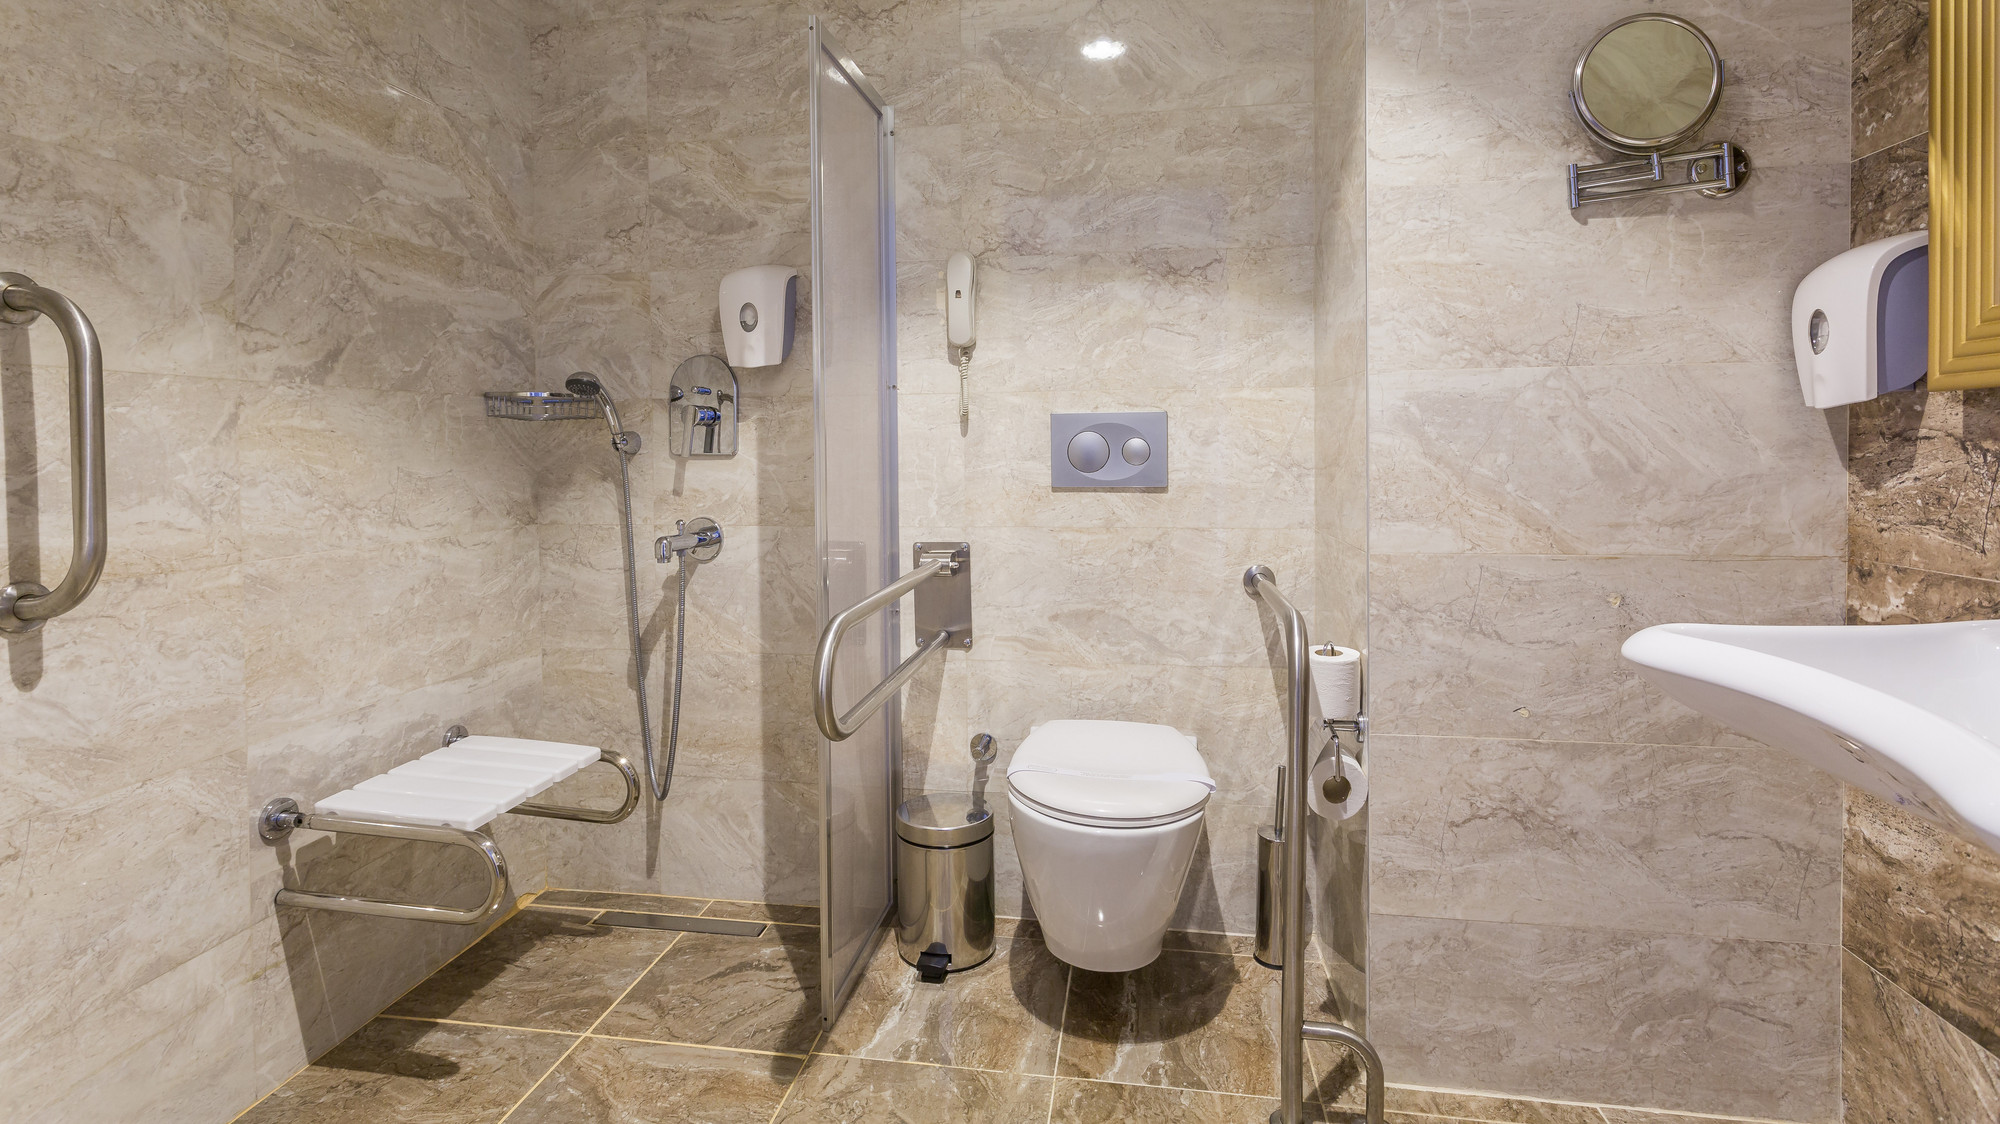 Disabled bathroom design